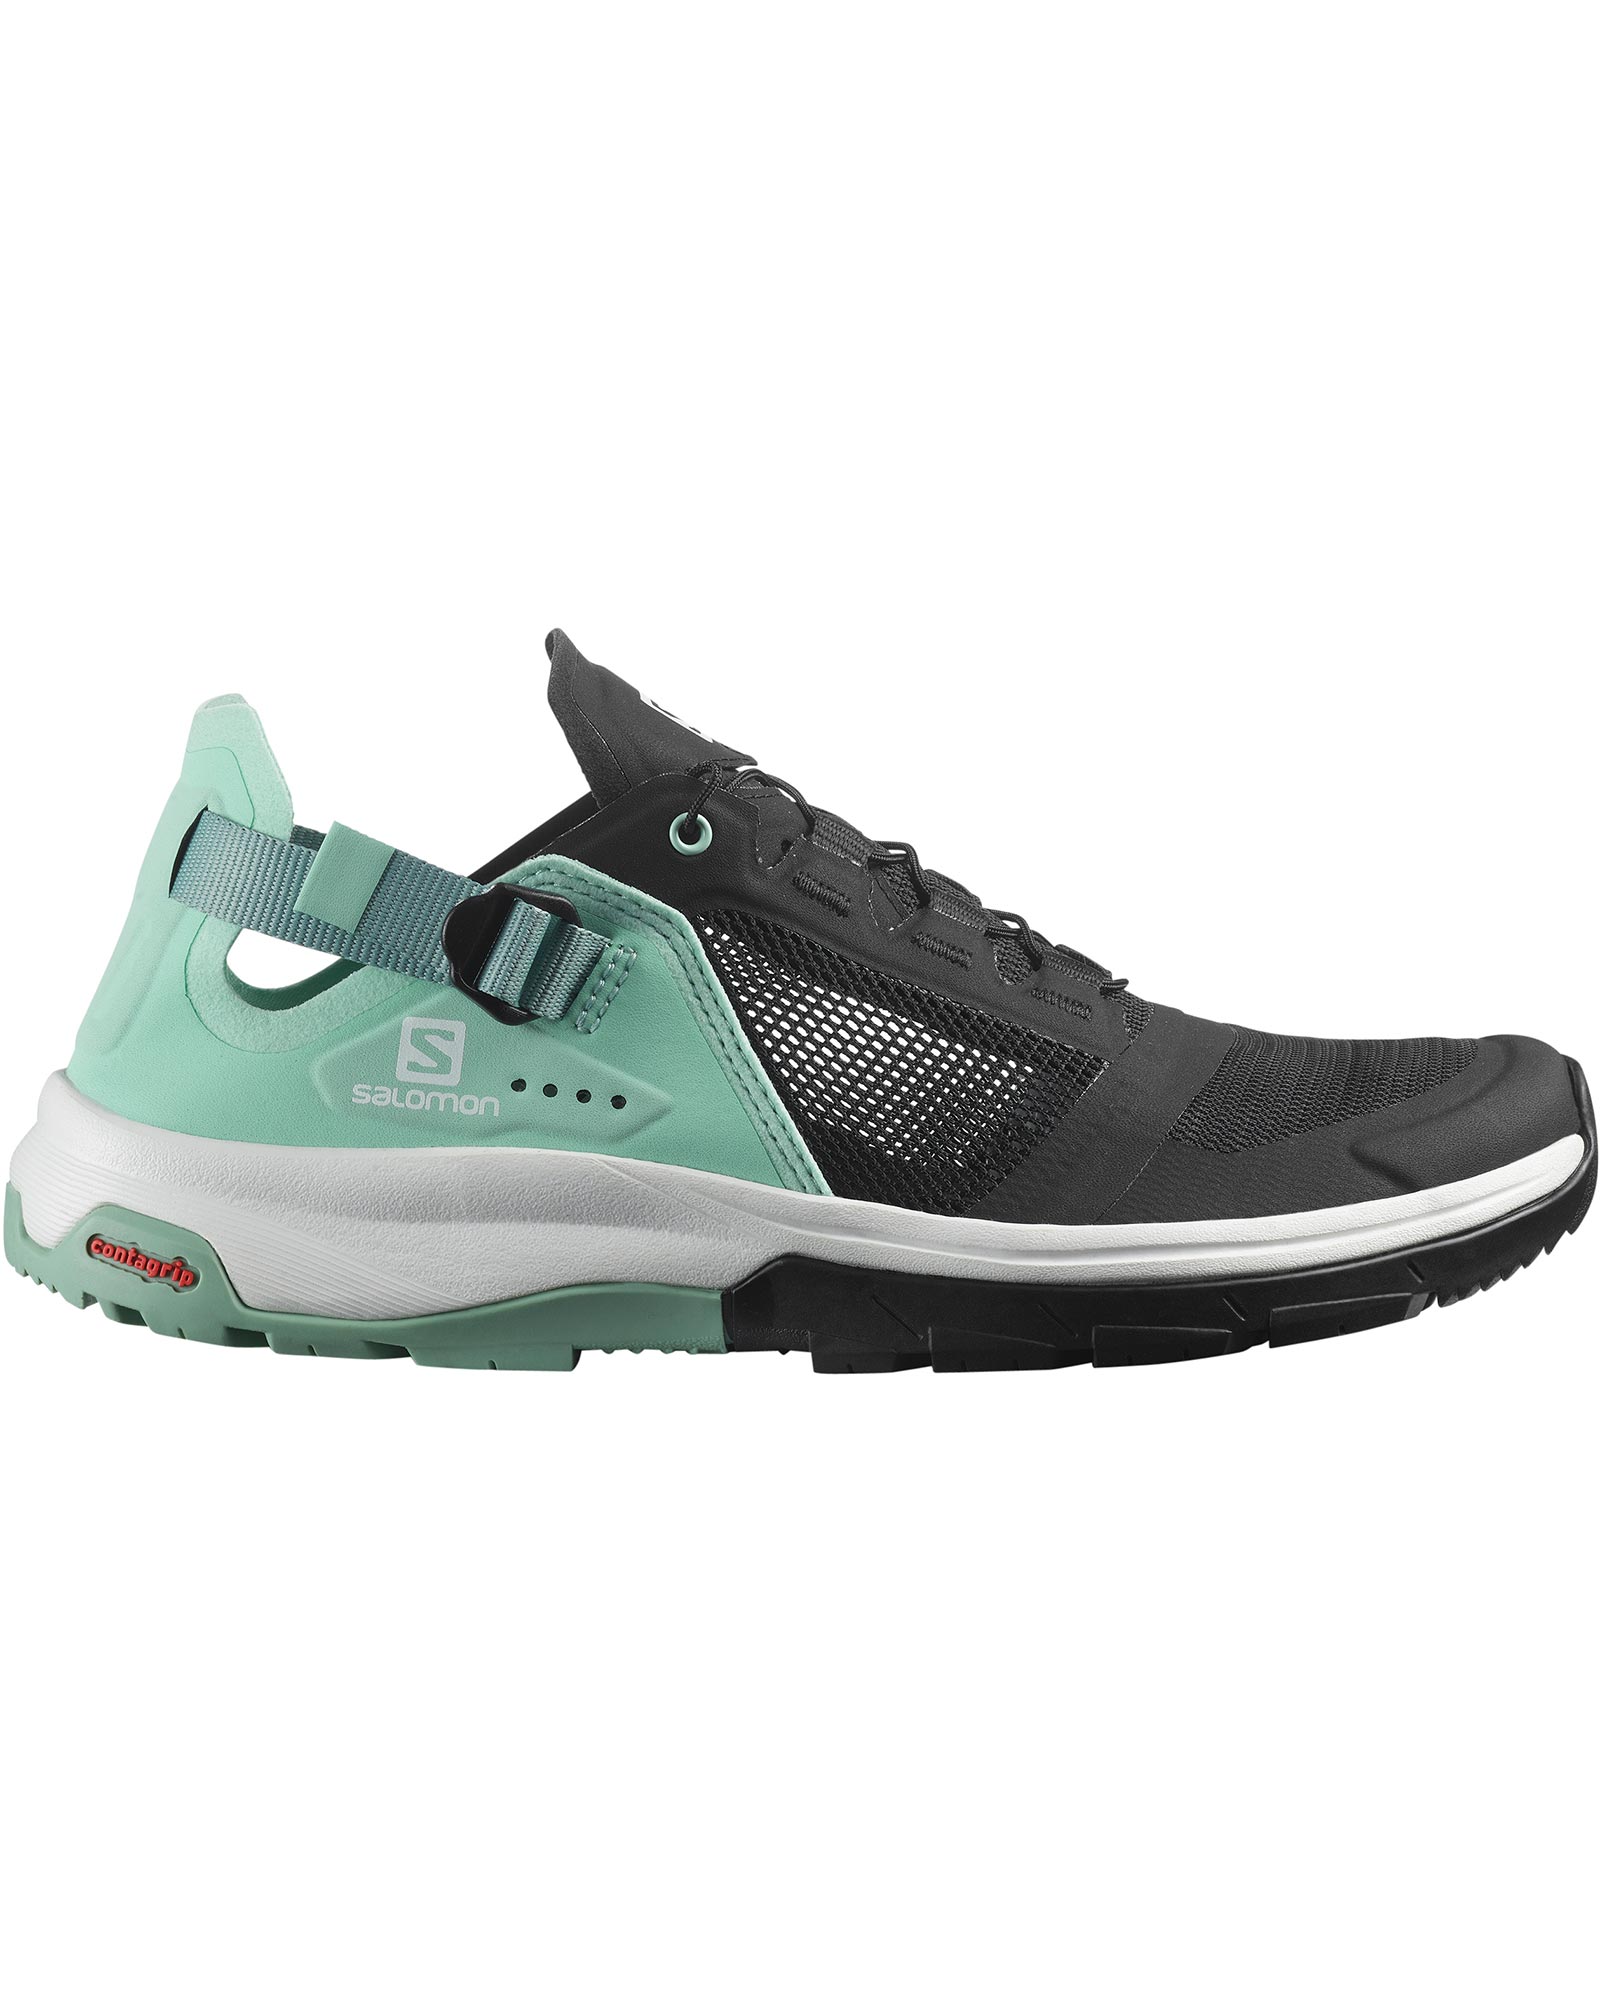 Salomon Tech Amphib 4 Women’s Shoes - Black/Yucca/Granite Green UK 8